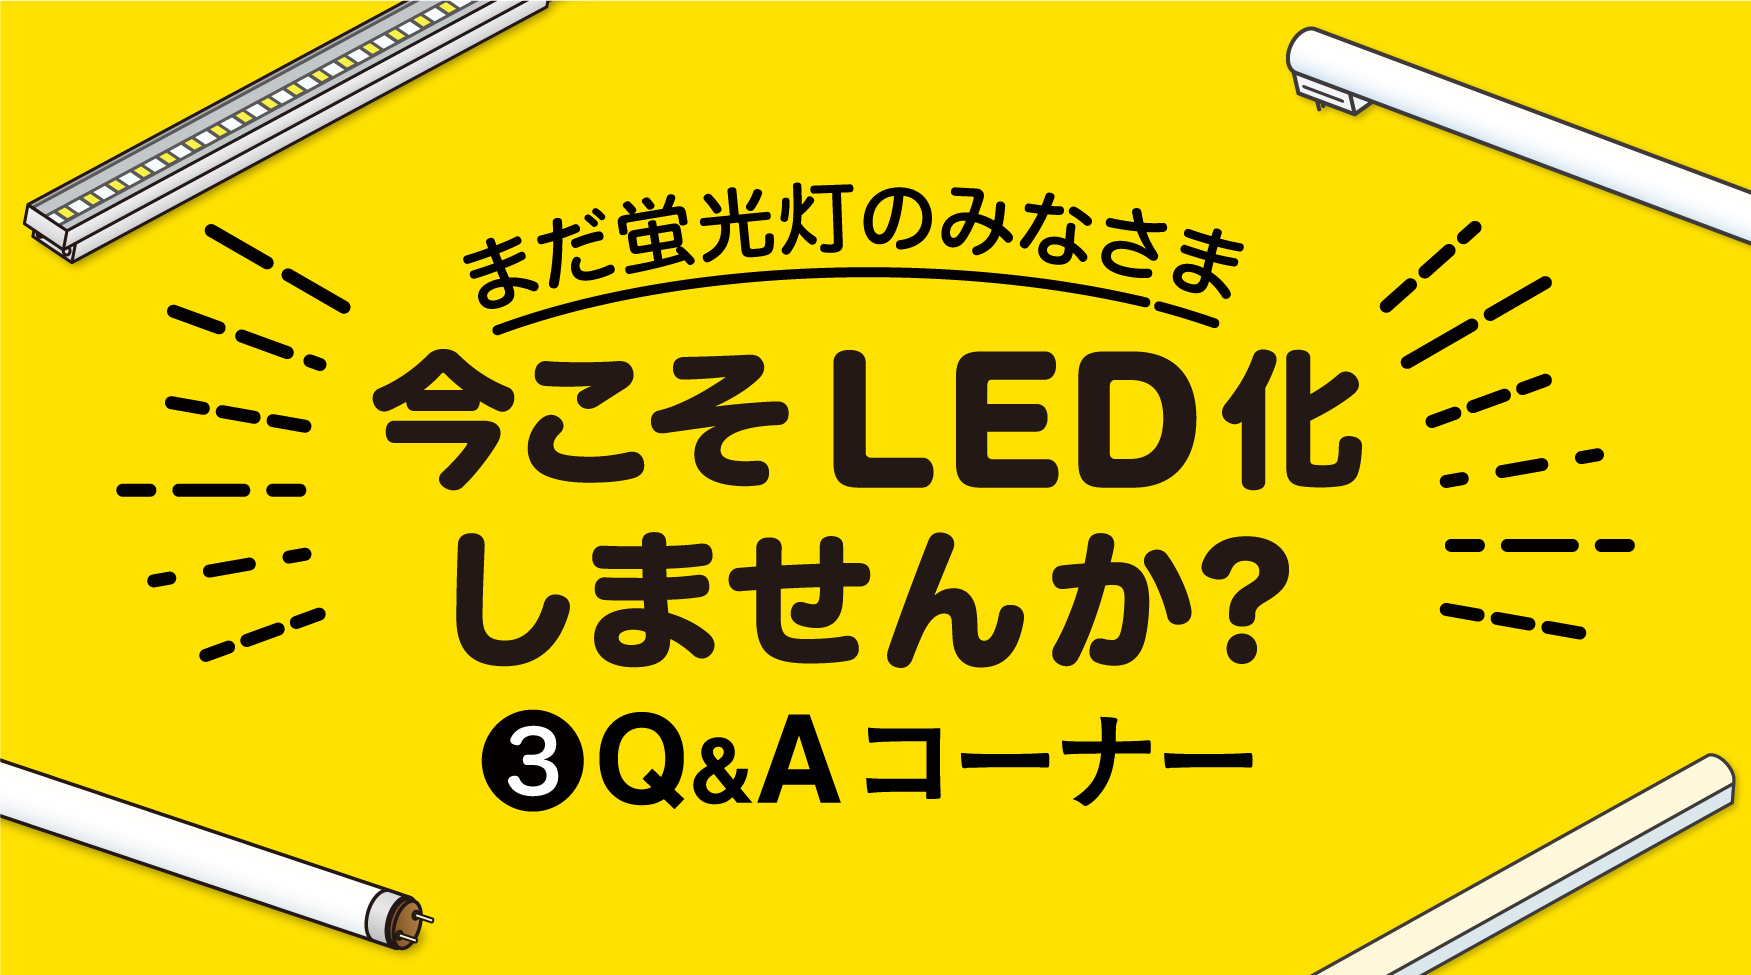 蛍光灯→LED置き換えのご提案その❸ 〜Q&Aコーナー〜